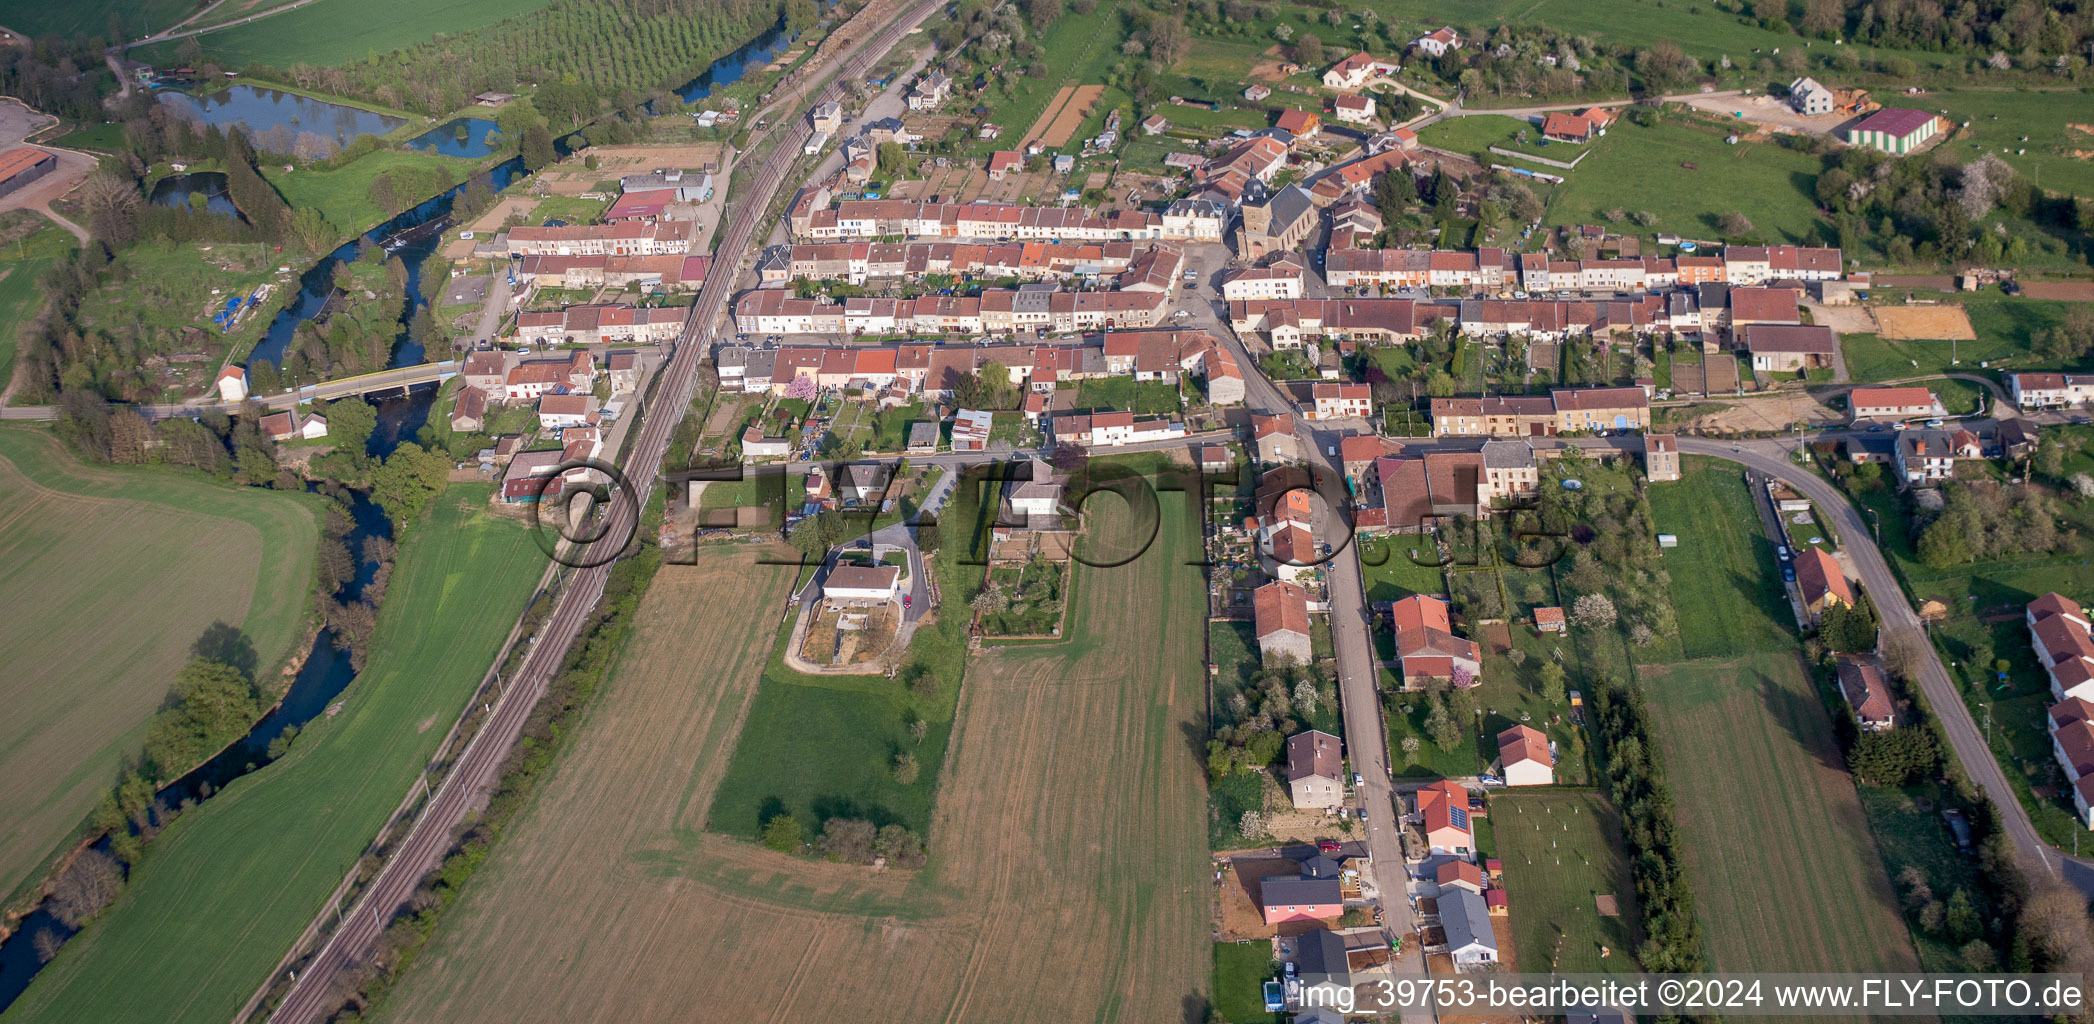 Vue aérienne de Champs agricoles et surfaces utilisables à Charency-Vezin dans le département Meurthe et Moselle, France